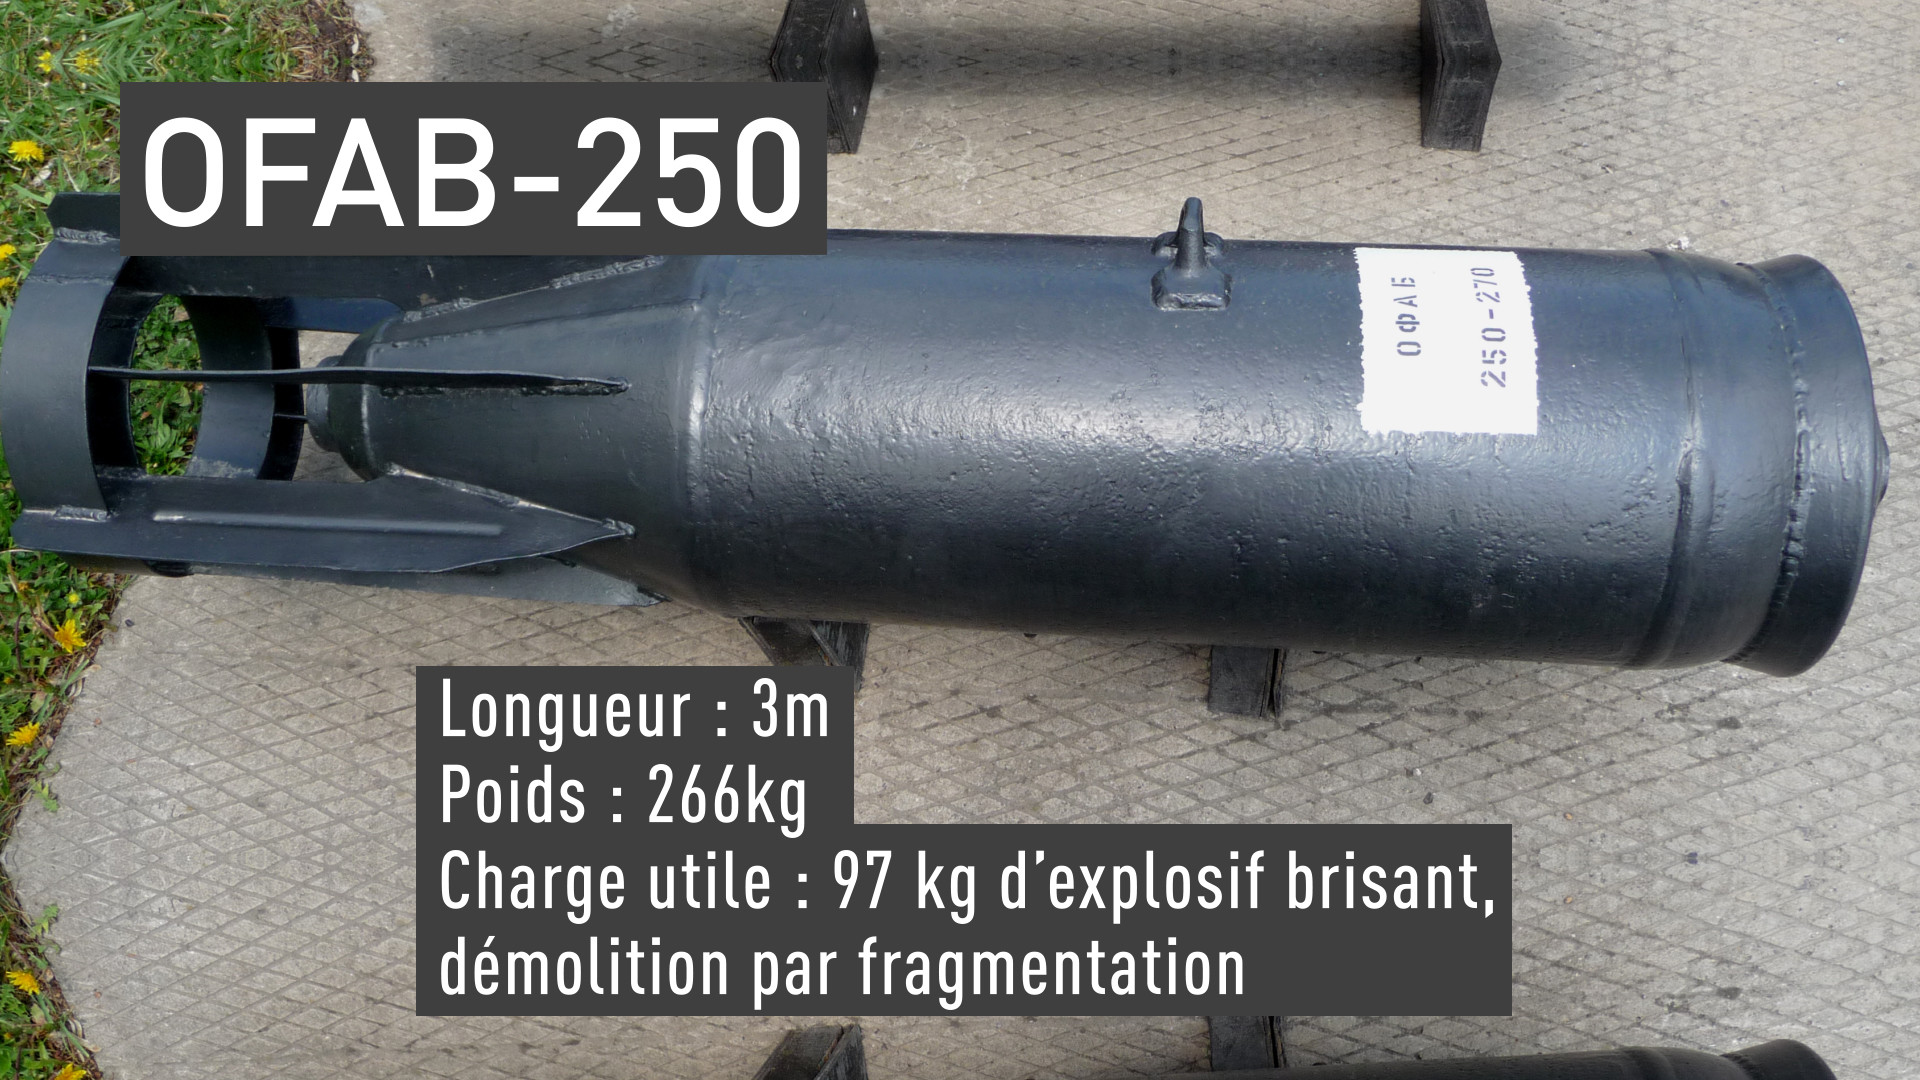 Exclusif : découvrez les bombes intelligentes utilisées par la Russie contre Daesh (PHOTOS, VIDEO)